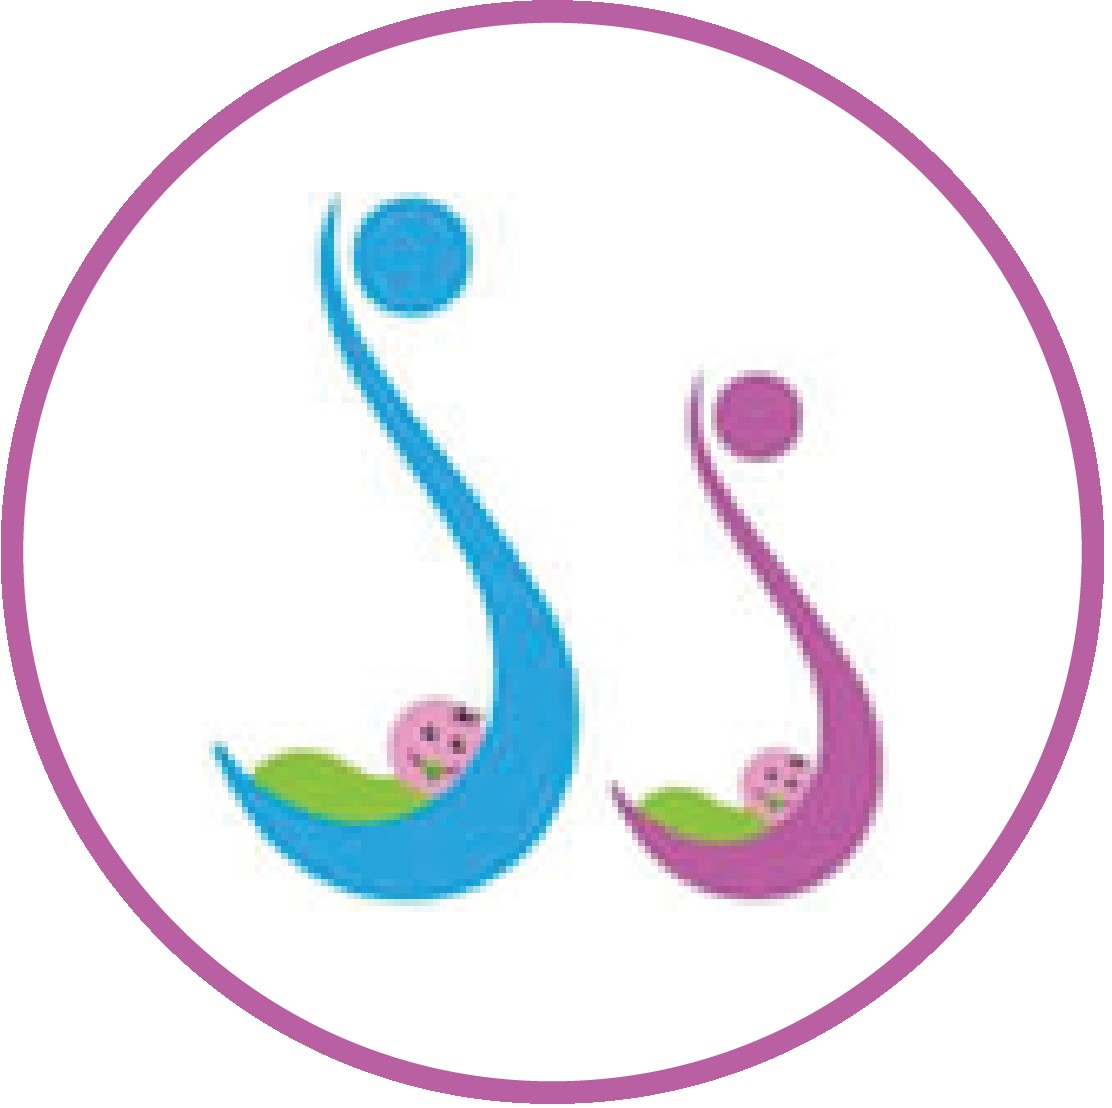 ss fertility centre chennai Profile Picture